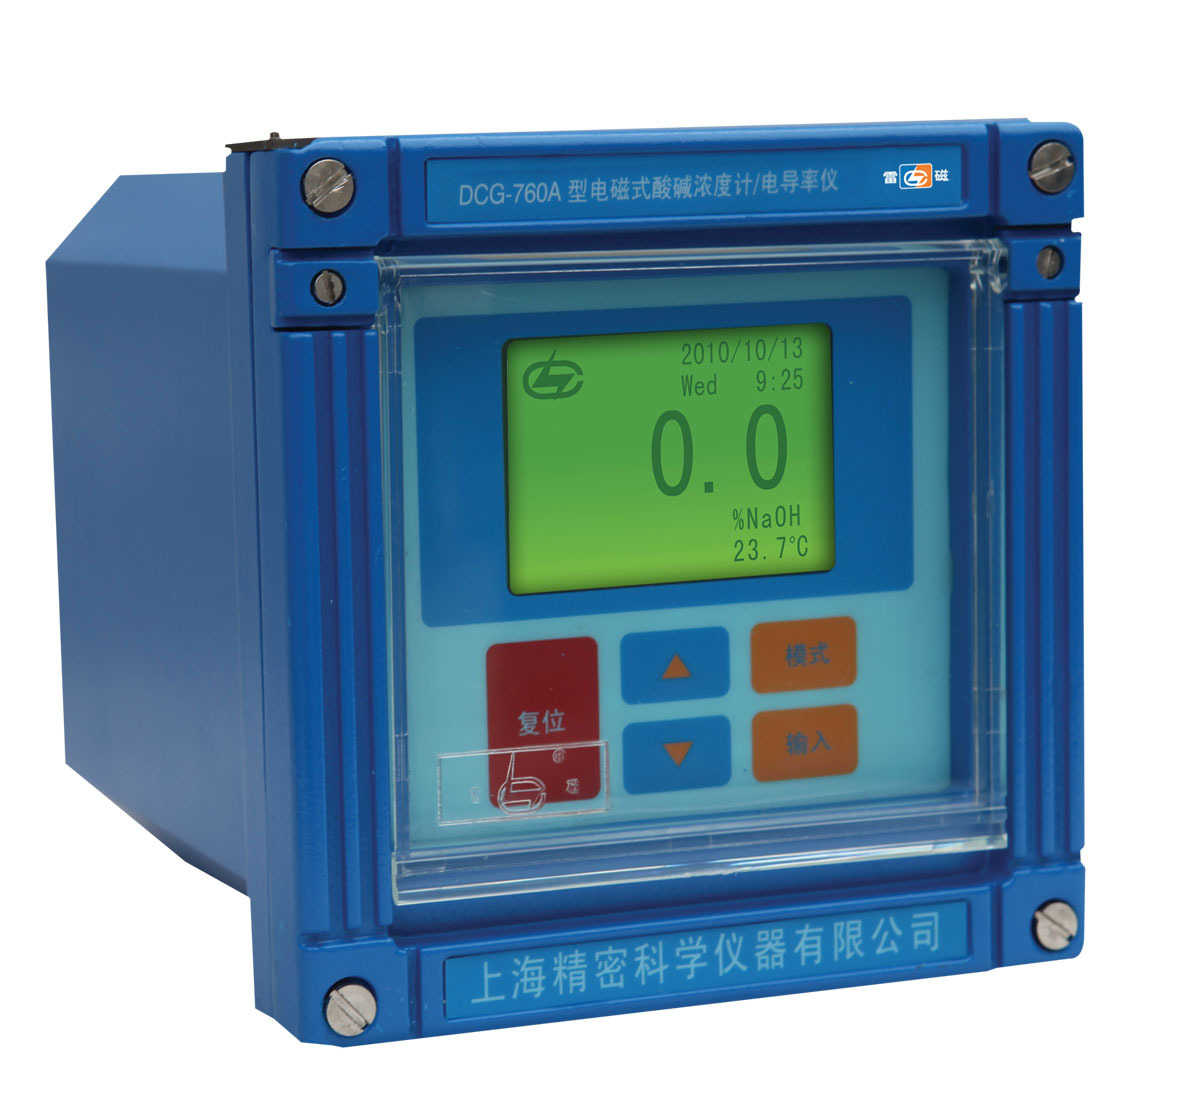 雷磁DCG-760A型电磁式酸碱浓度计/电导率仪 